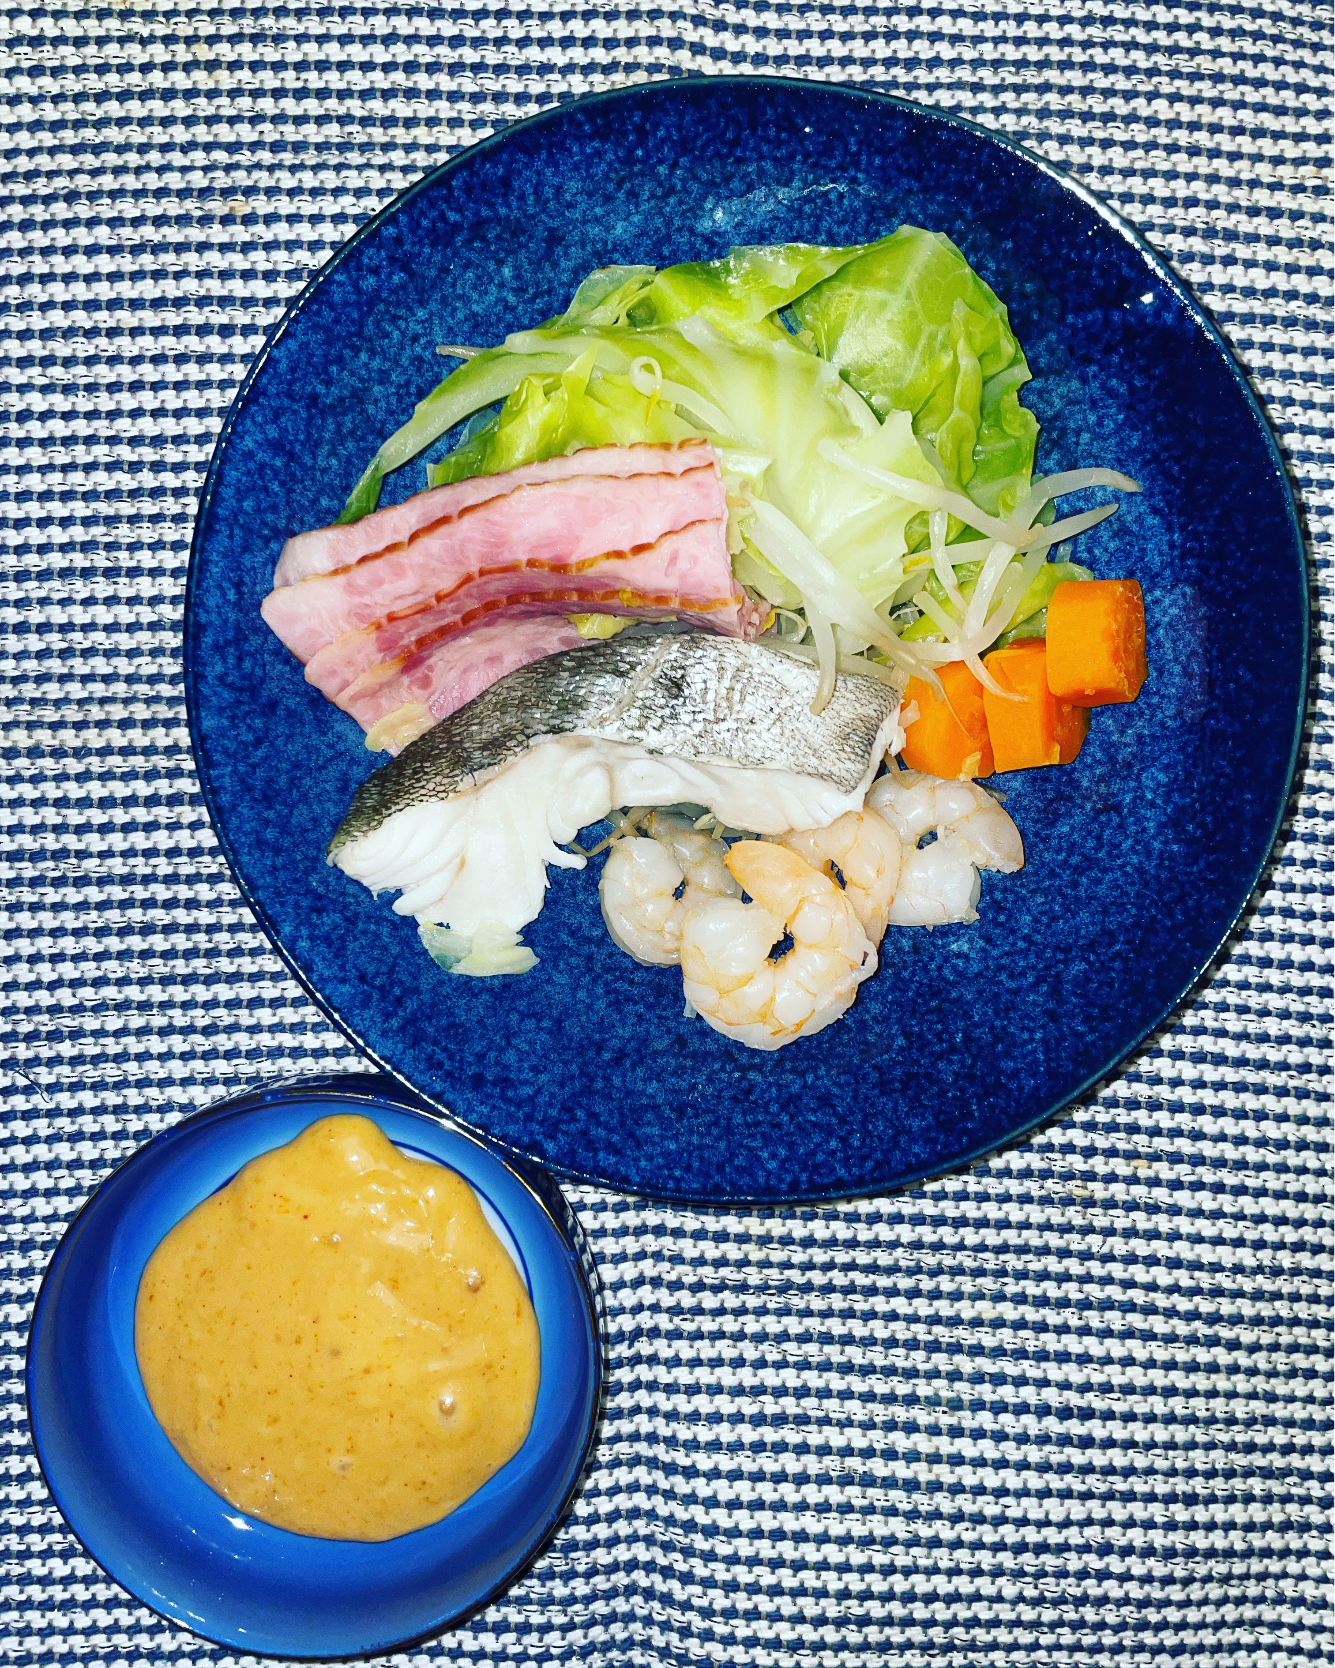 味噌マヨコチュジャンで食べる蒸し野菜